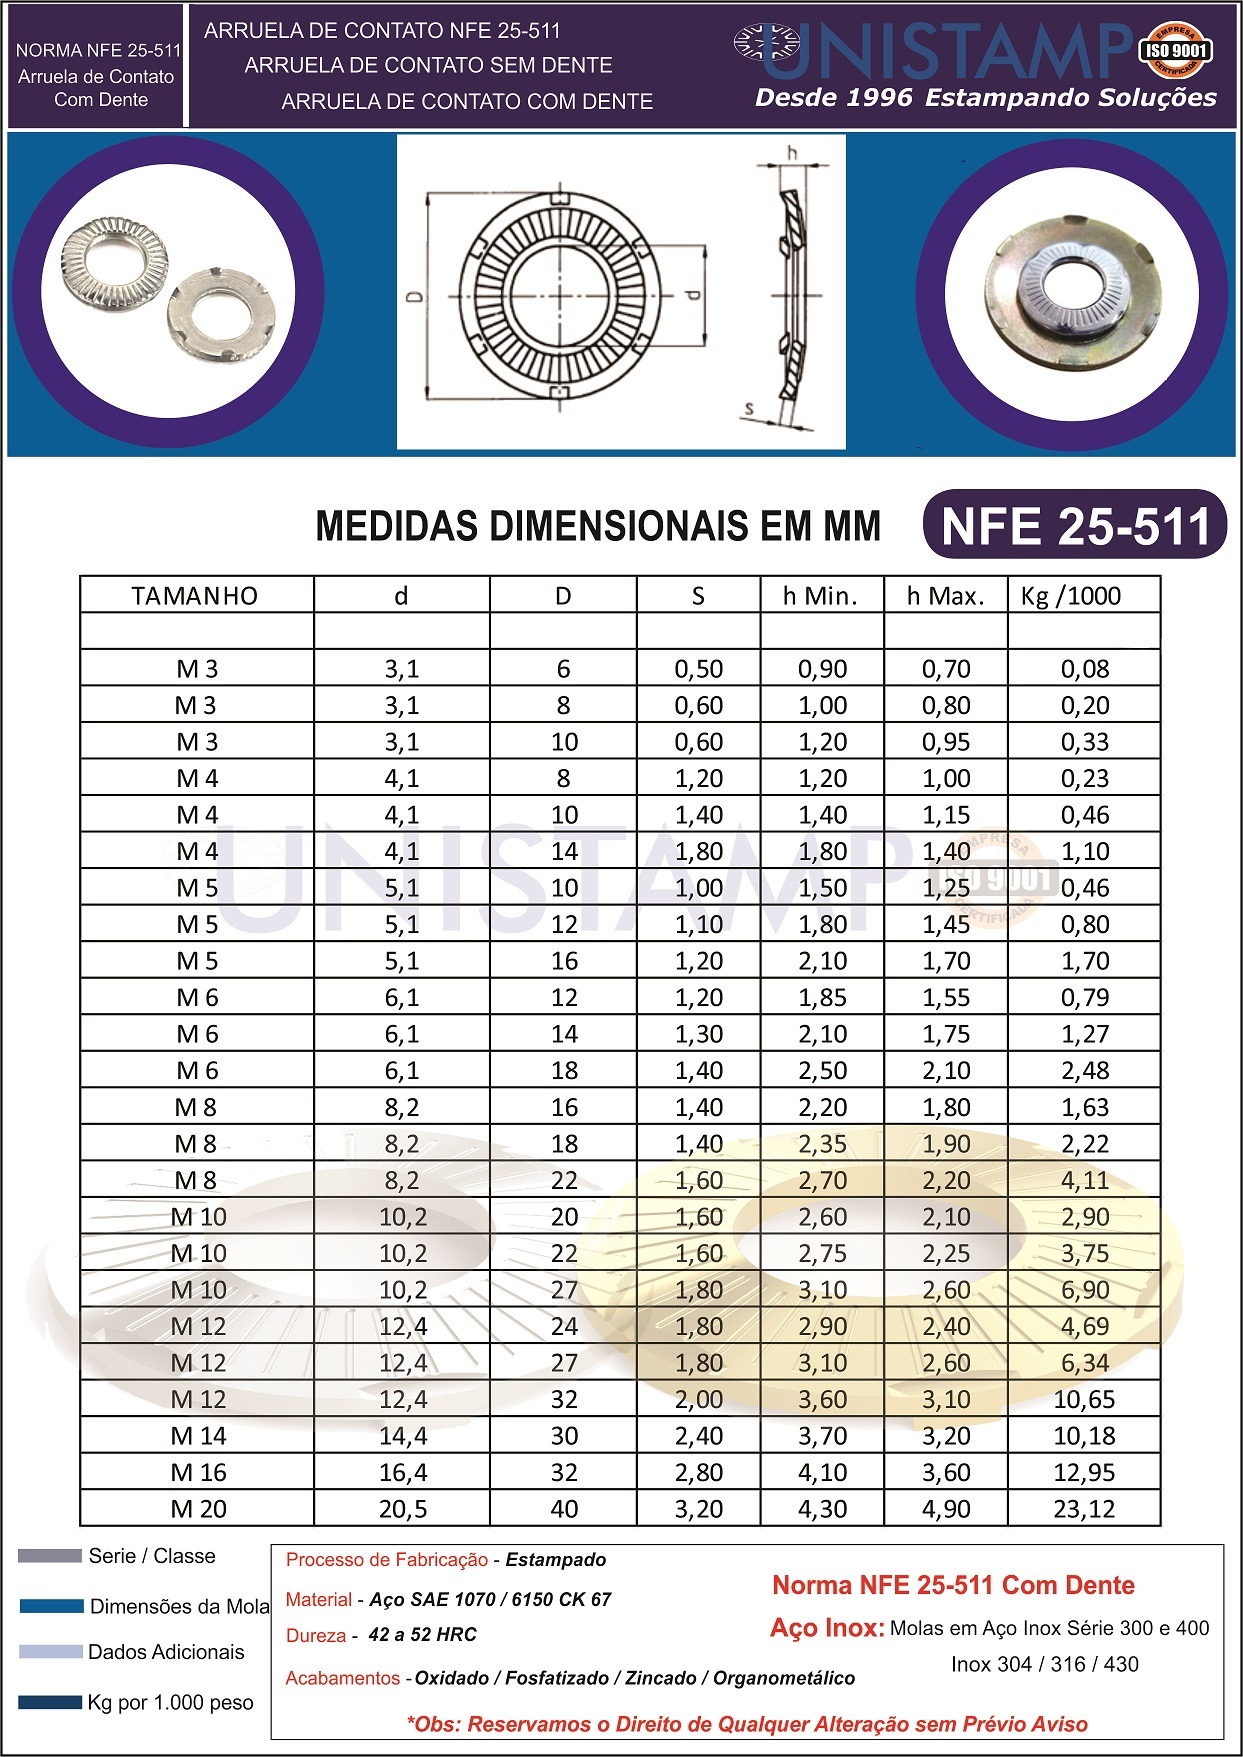 NFE 25511 Arruela de Contato Catalogo Dimensional com Dente